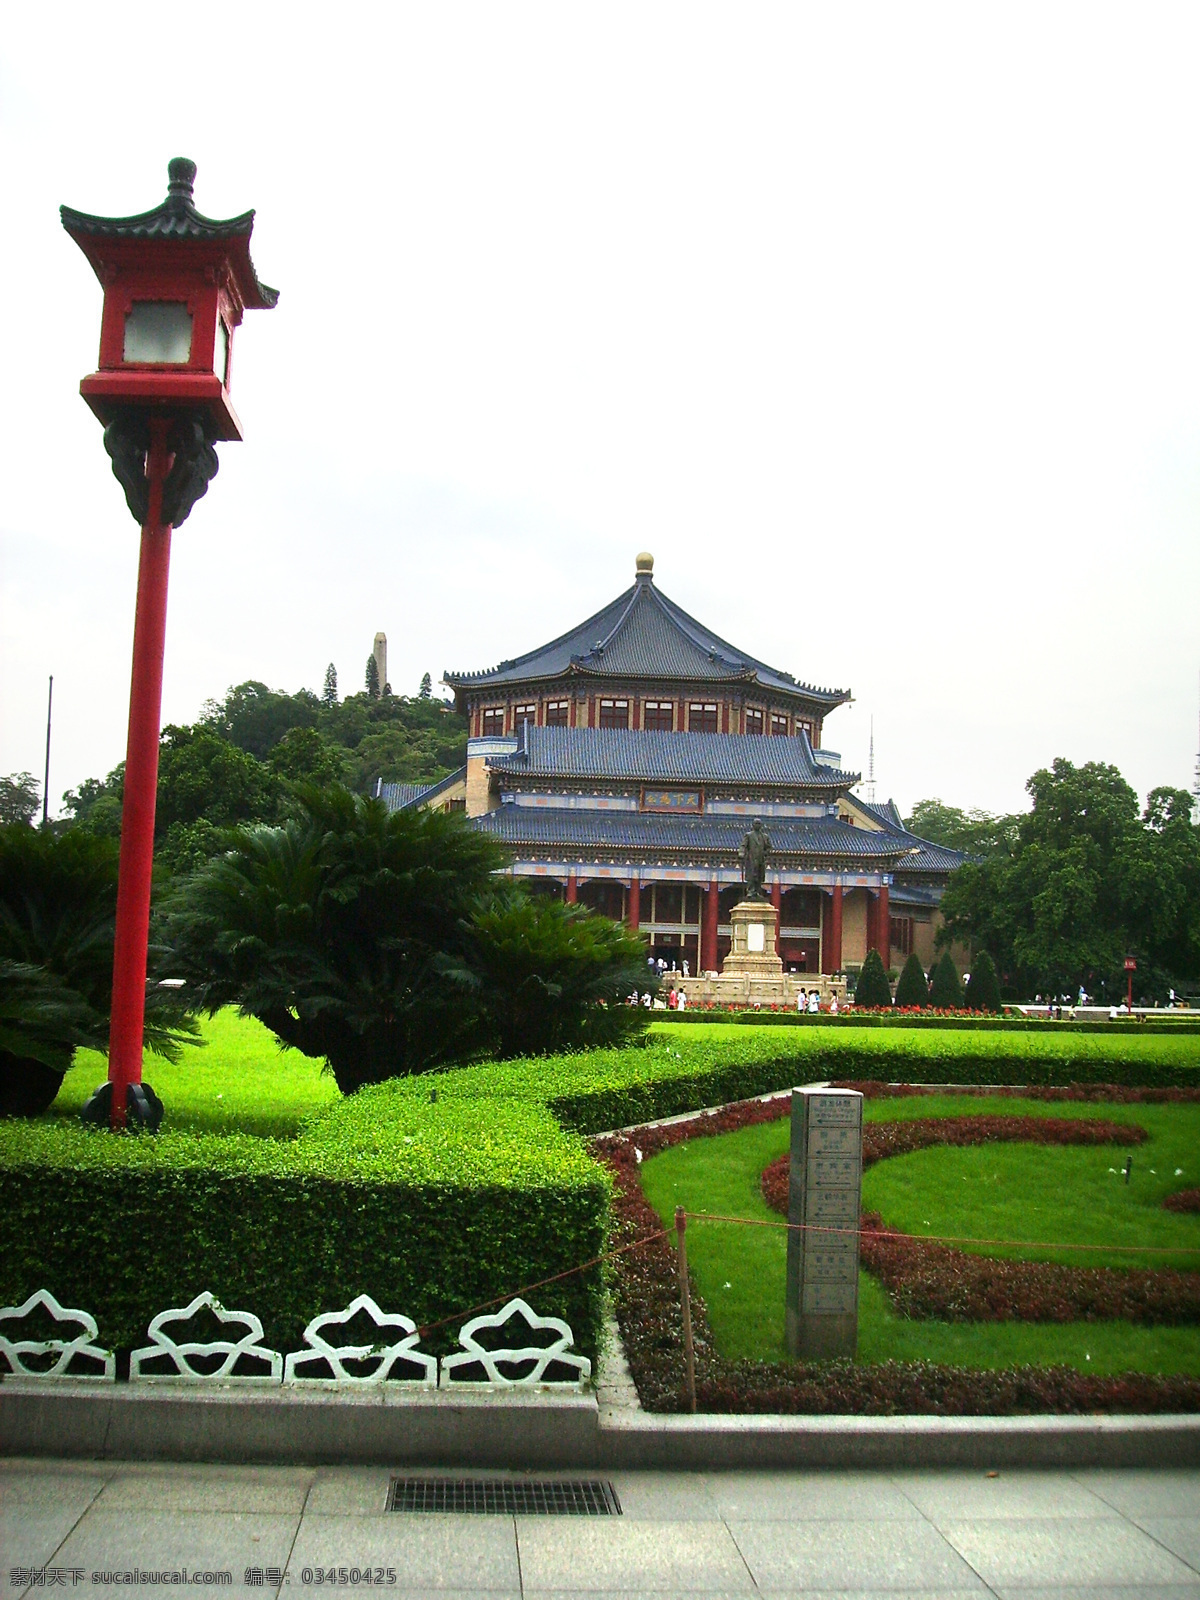 中山纪念堂 广州景点 广州名胜 广州 建筑摄影 建筑园林